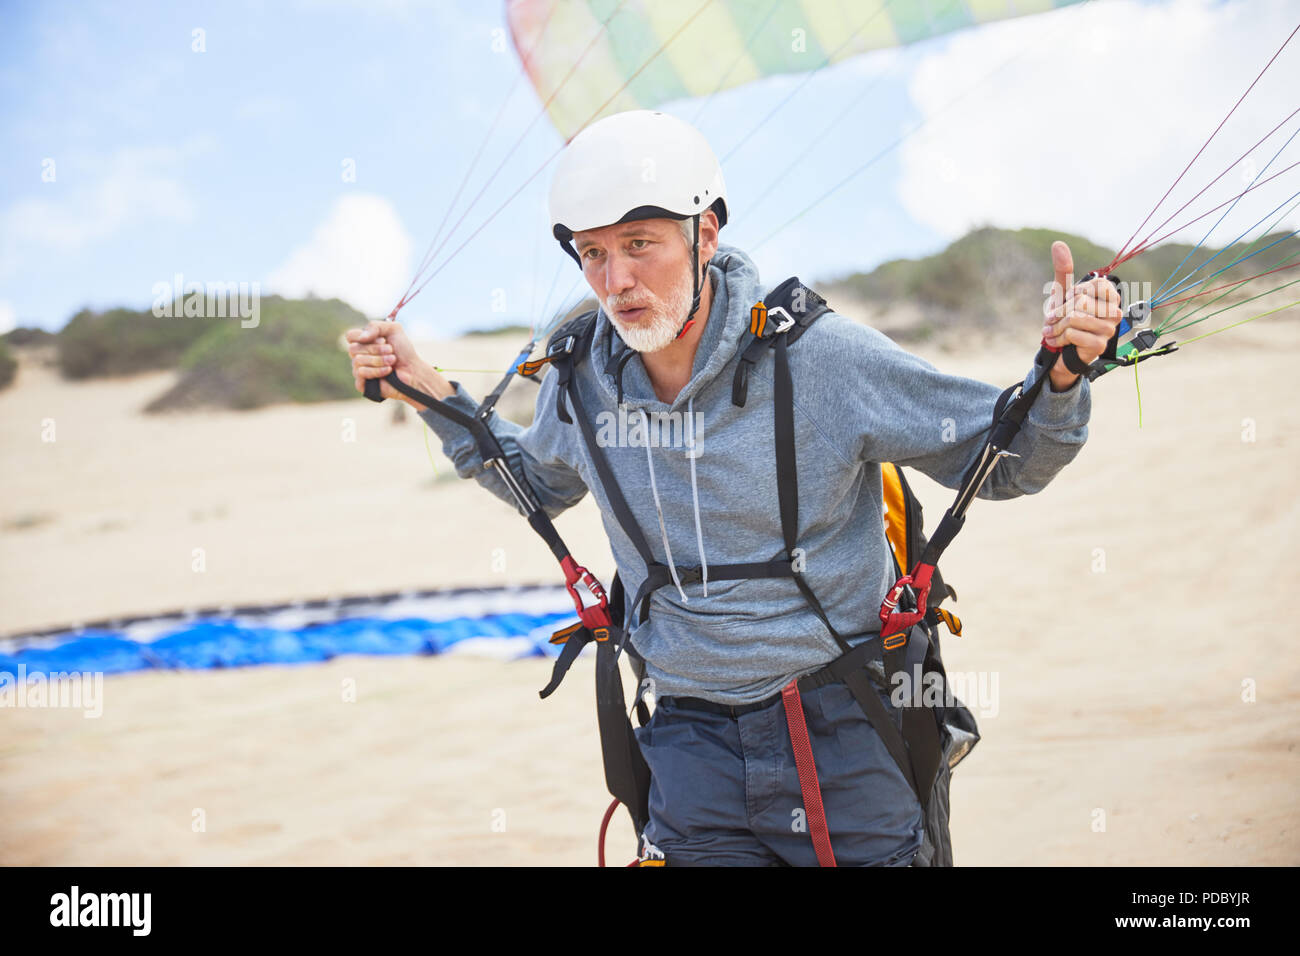 Reife männliche Gleitschirm mit Ausrüstung und Fallschirm am Strand konzentriert Stockfoto